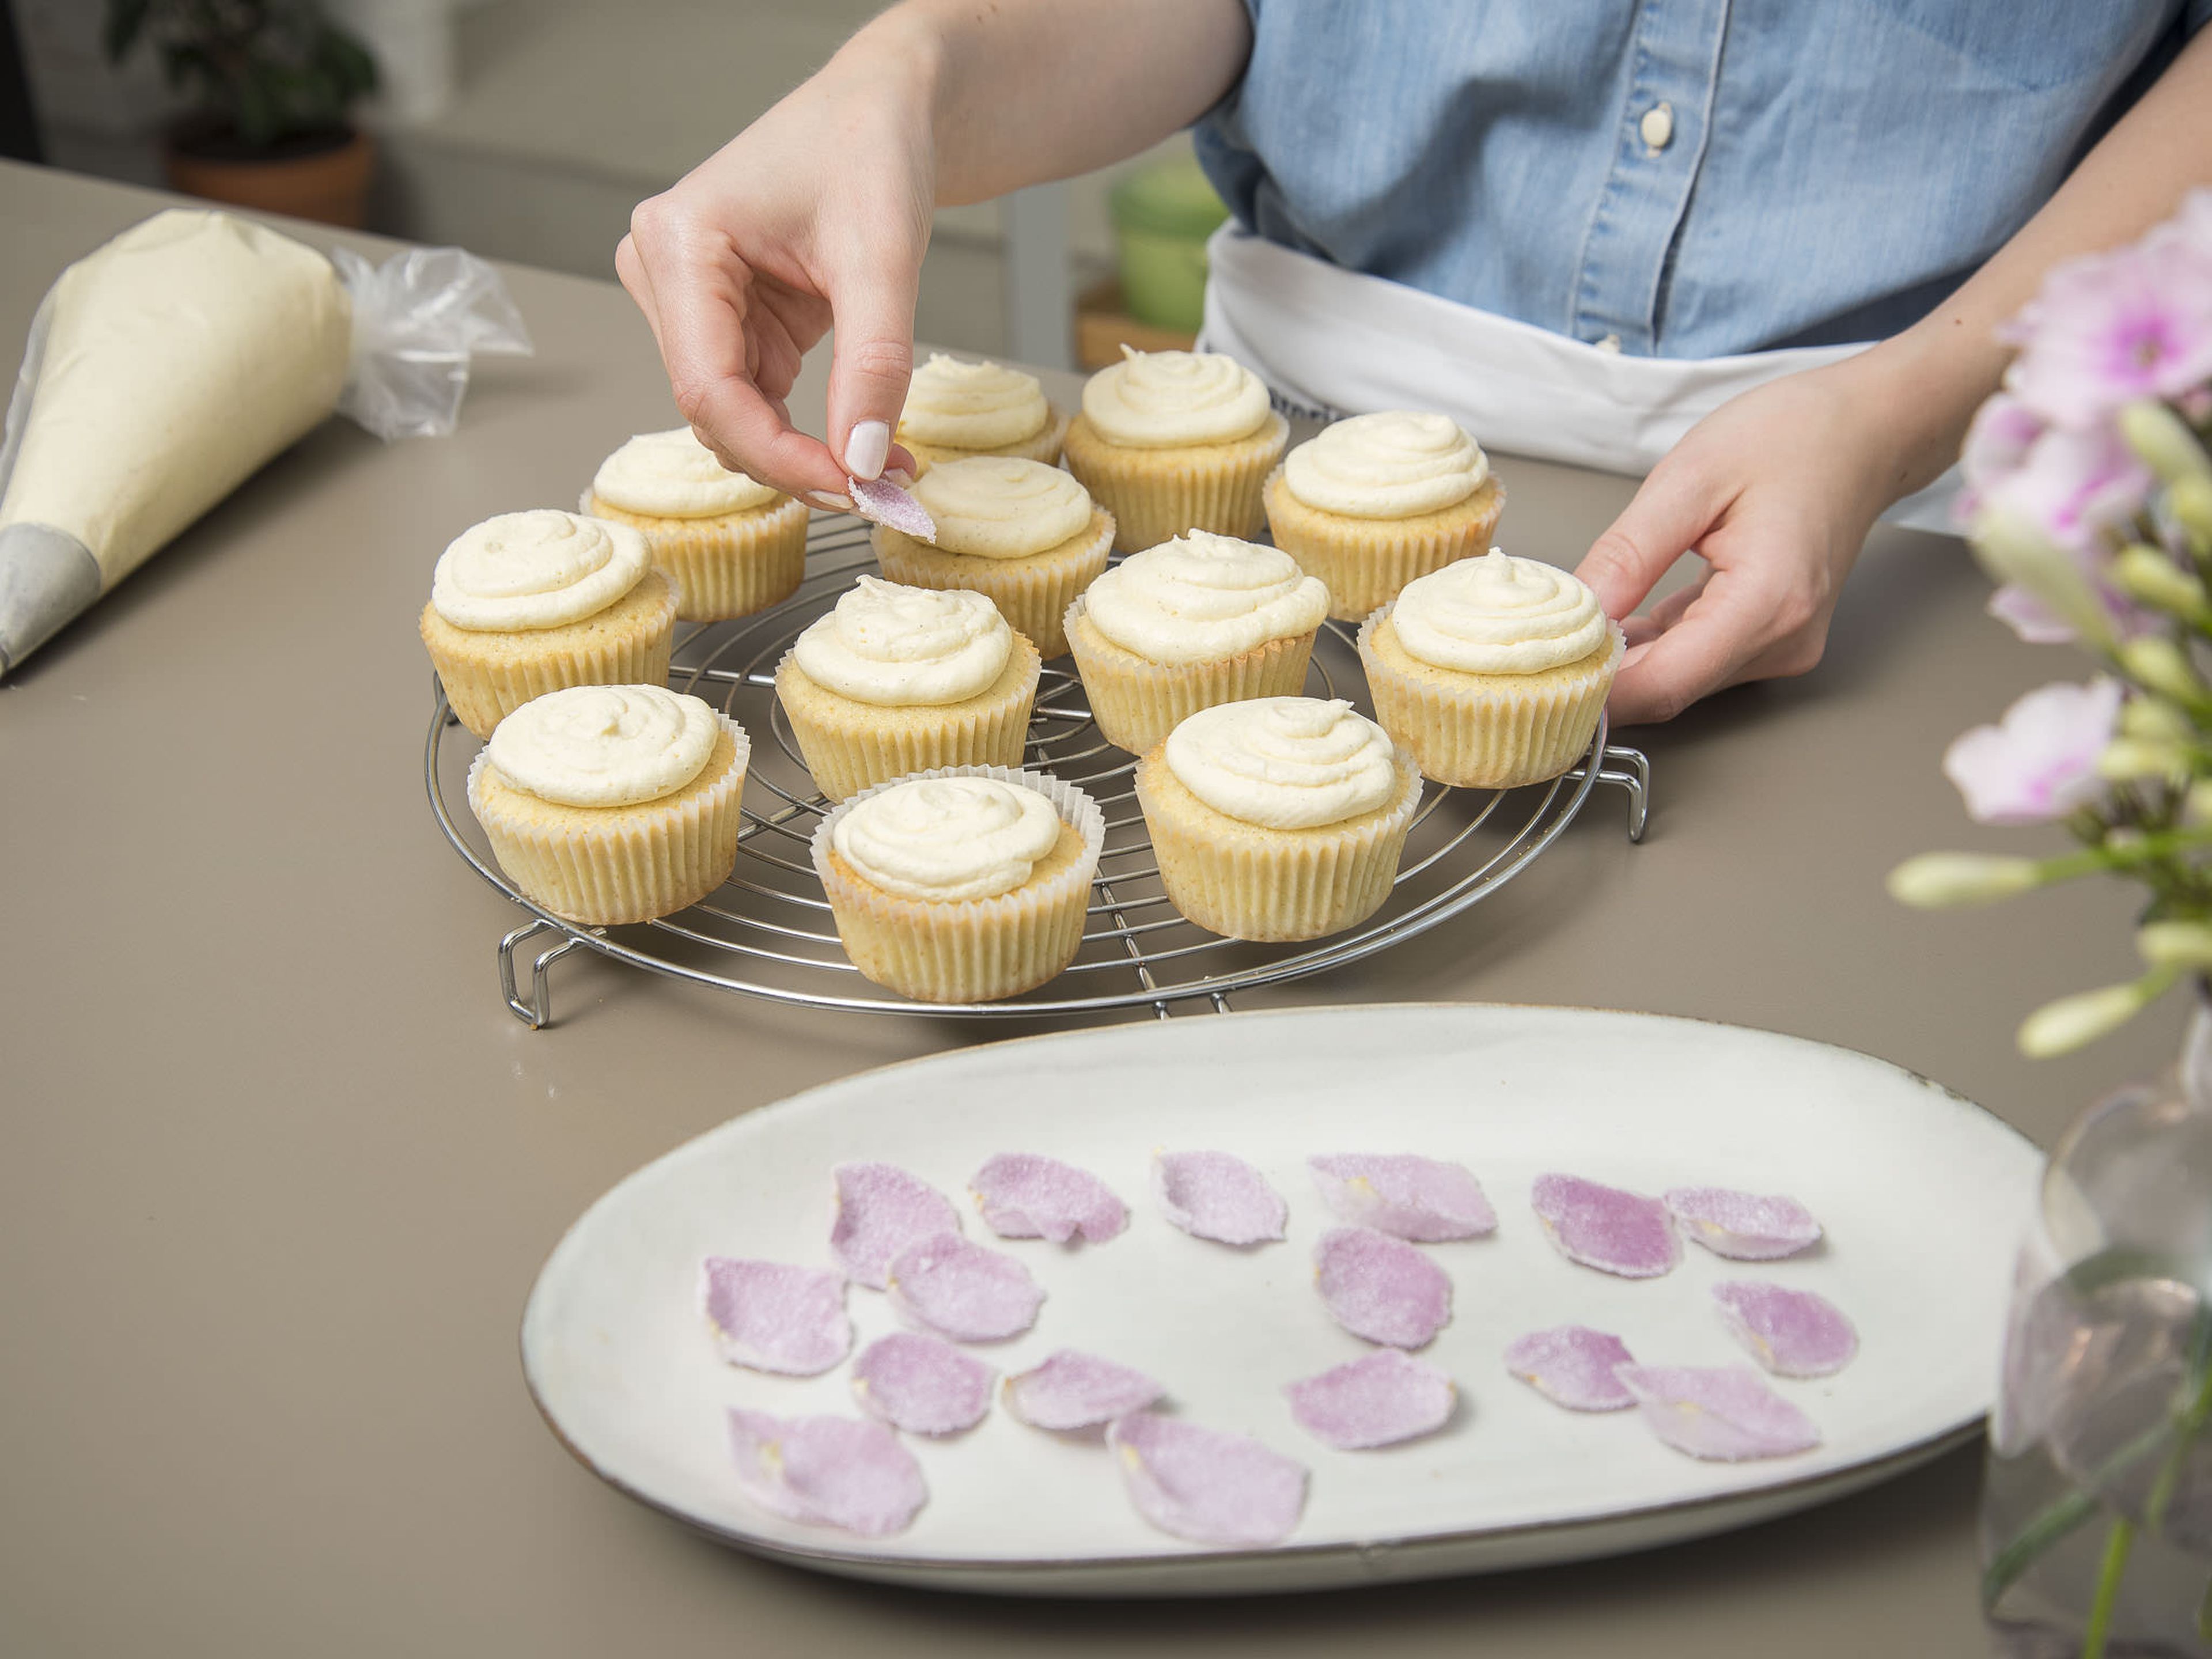 Die Buttercreme kreisförmig von innen nach außen auf die Cupcakes spritzen. Jeden Cupcake mit einem gezuckerten Rosenblatt dekorieren. Guten Appetit!